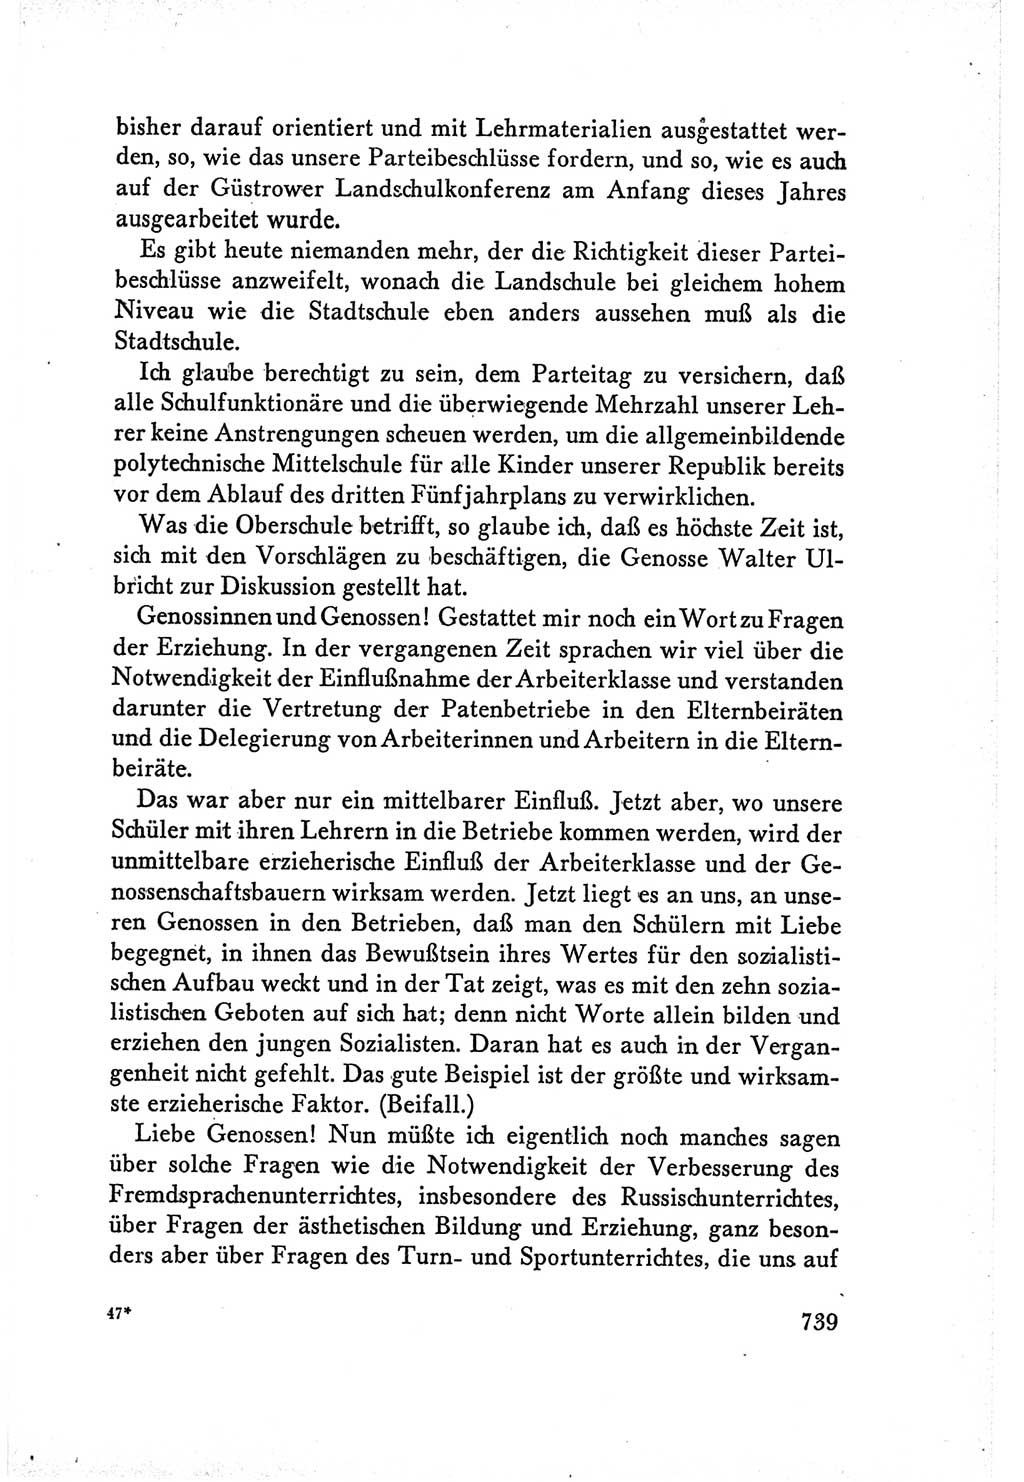 Protokoll der Verhandlungen des Ⅴ. Parteitages der Sozialistischen Einheitspartei Deutschlands (SED) [Deutsche Demokratische Republik (DDR)] 1958, Seite 739